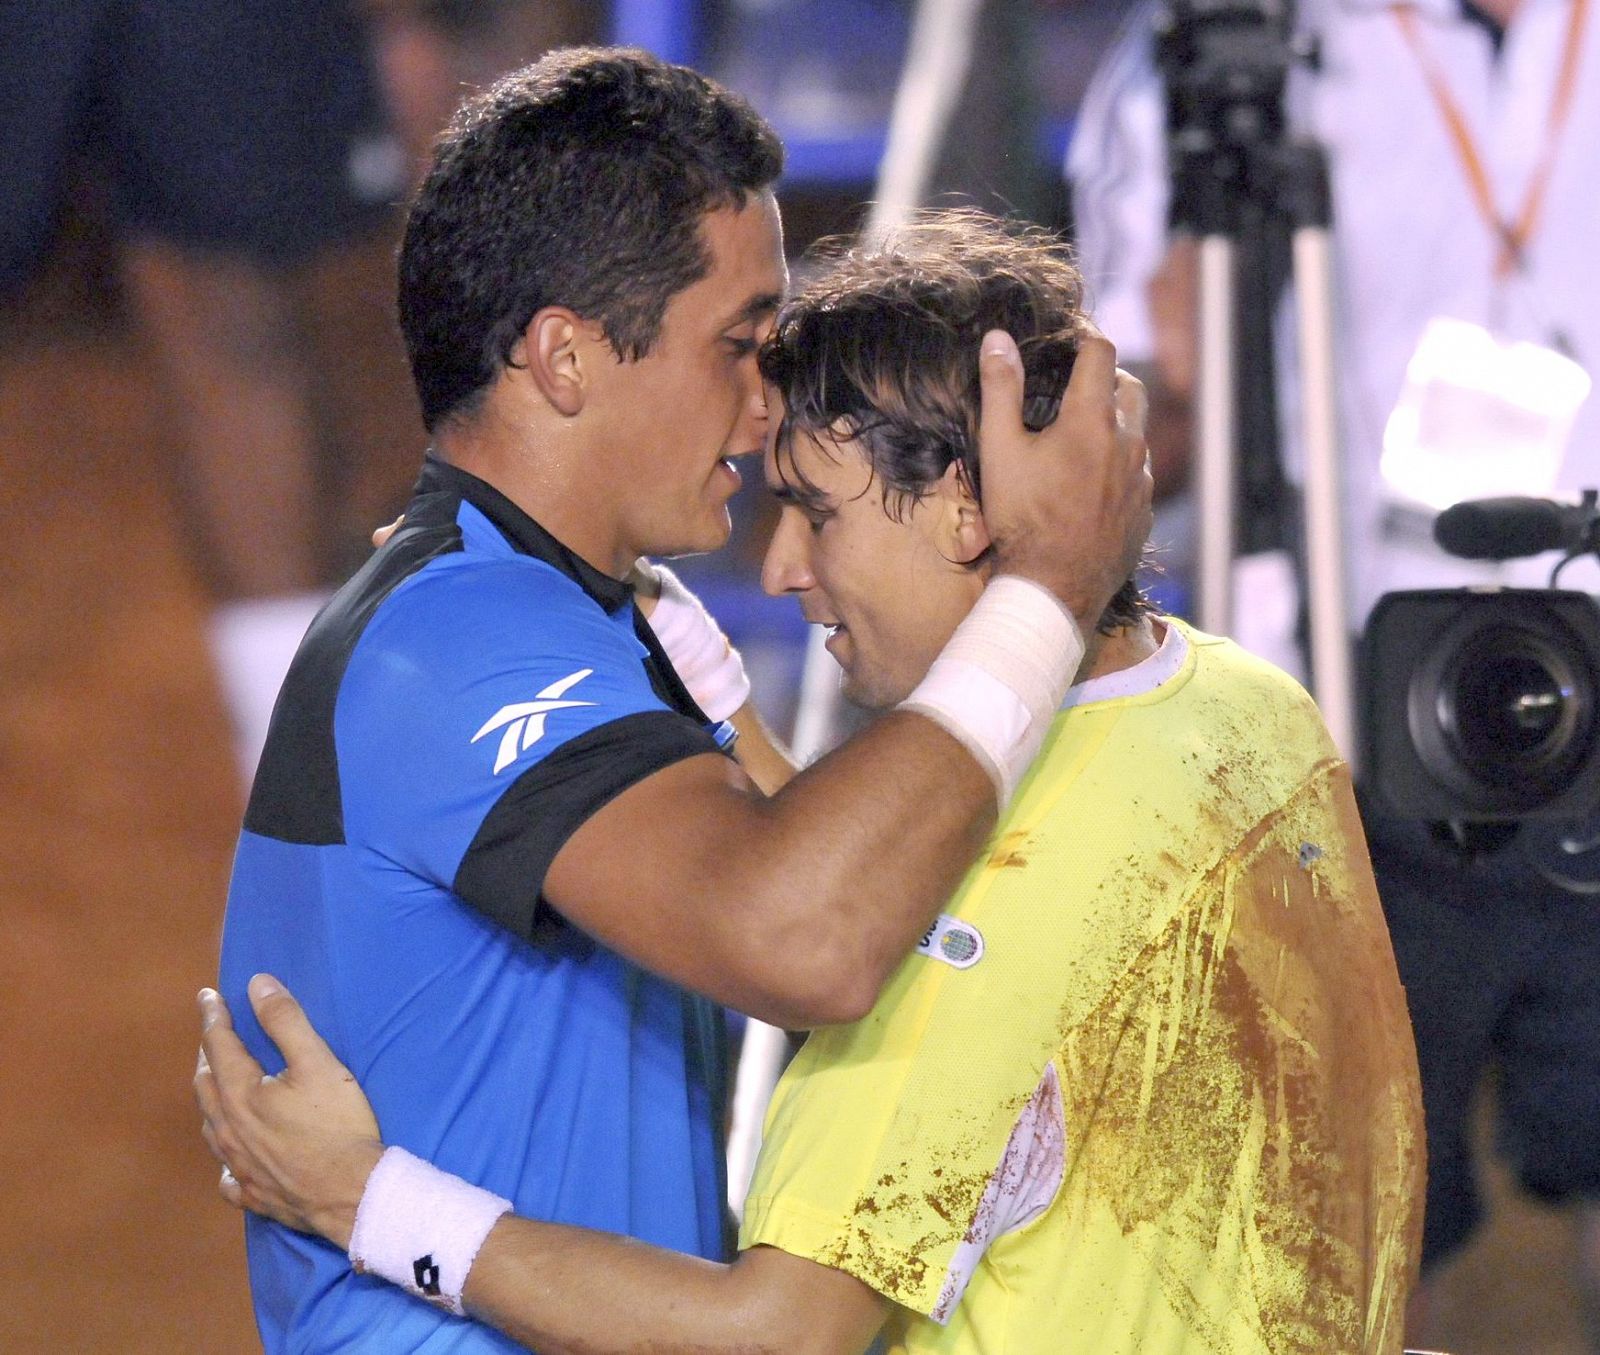 Los tenistas españoles Ferrer, campeón del Abierto Mexicano de Tenis, y Almagro, subcampeón, se abrazan tras la final.